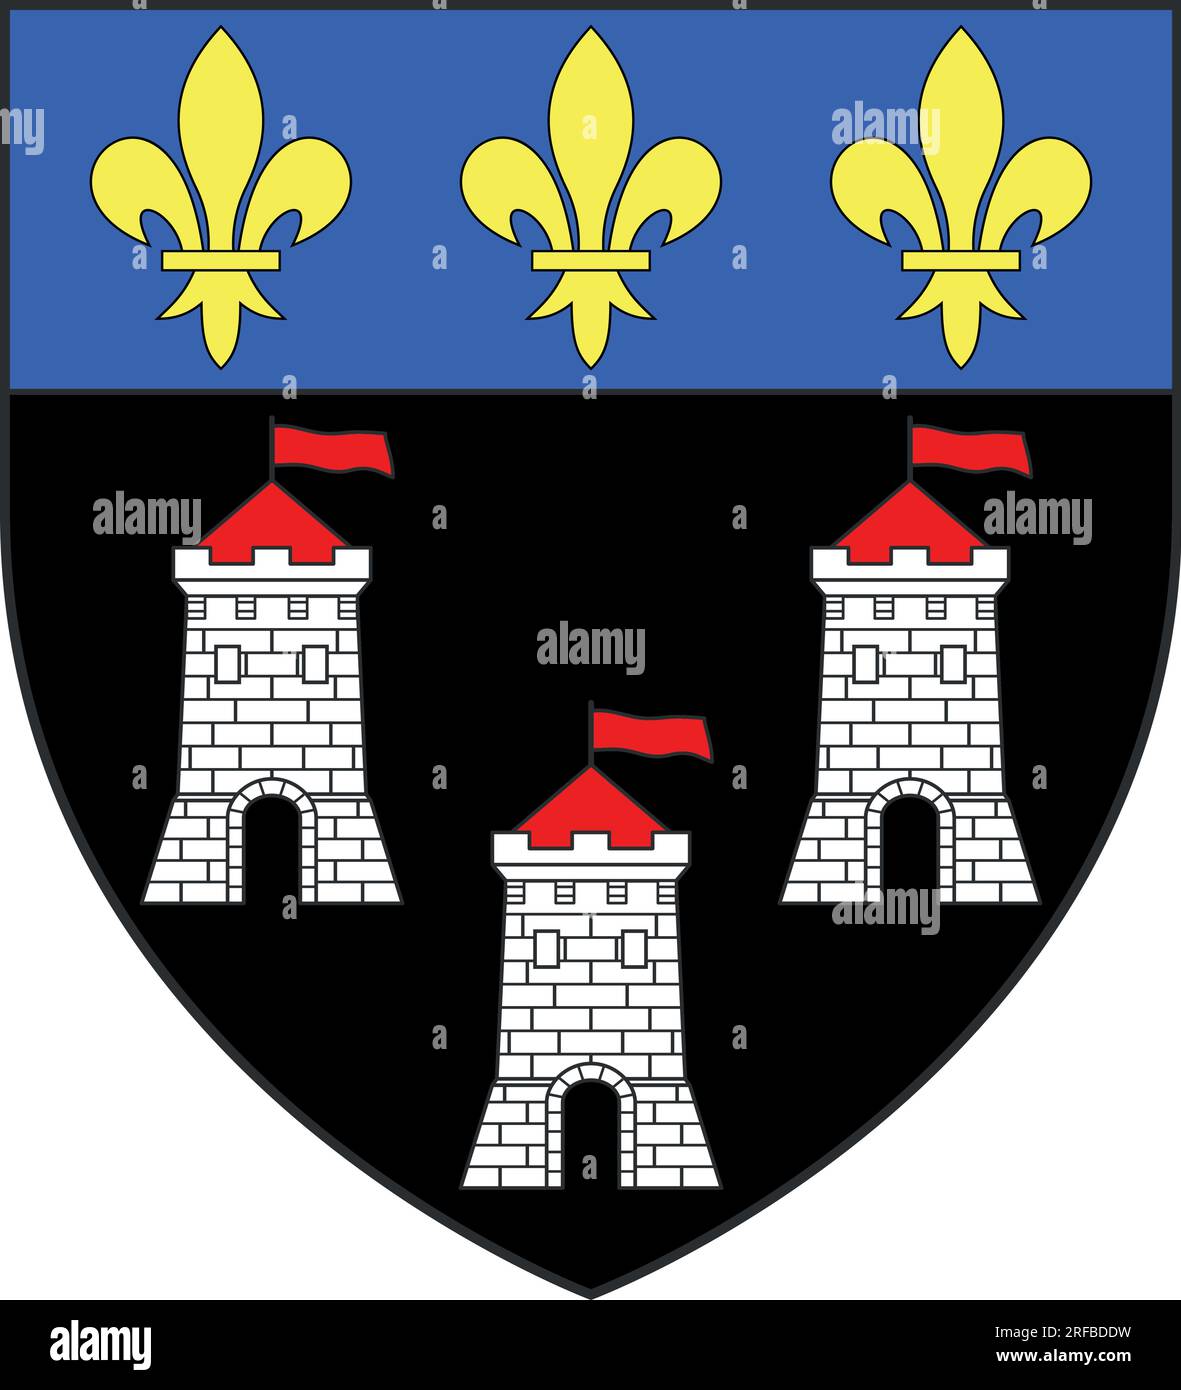 Armoiries officielles illustration vectorielle de la ville française de TOURS, FRANCE Illustration de Vecteur